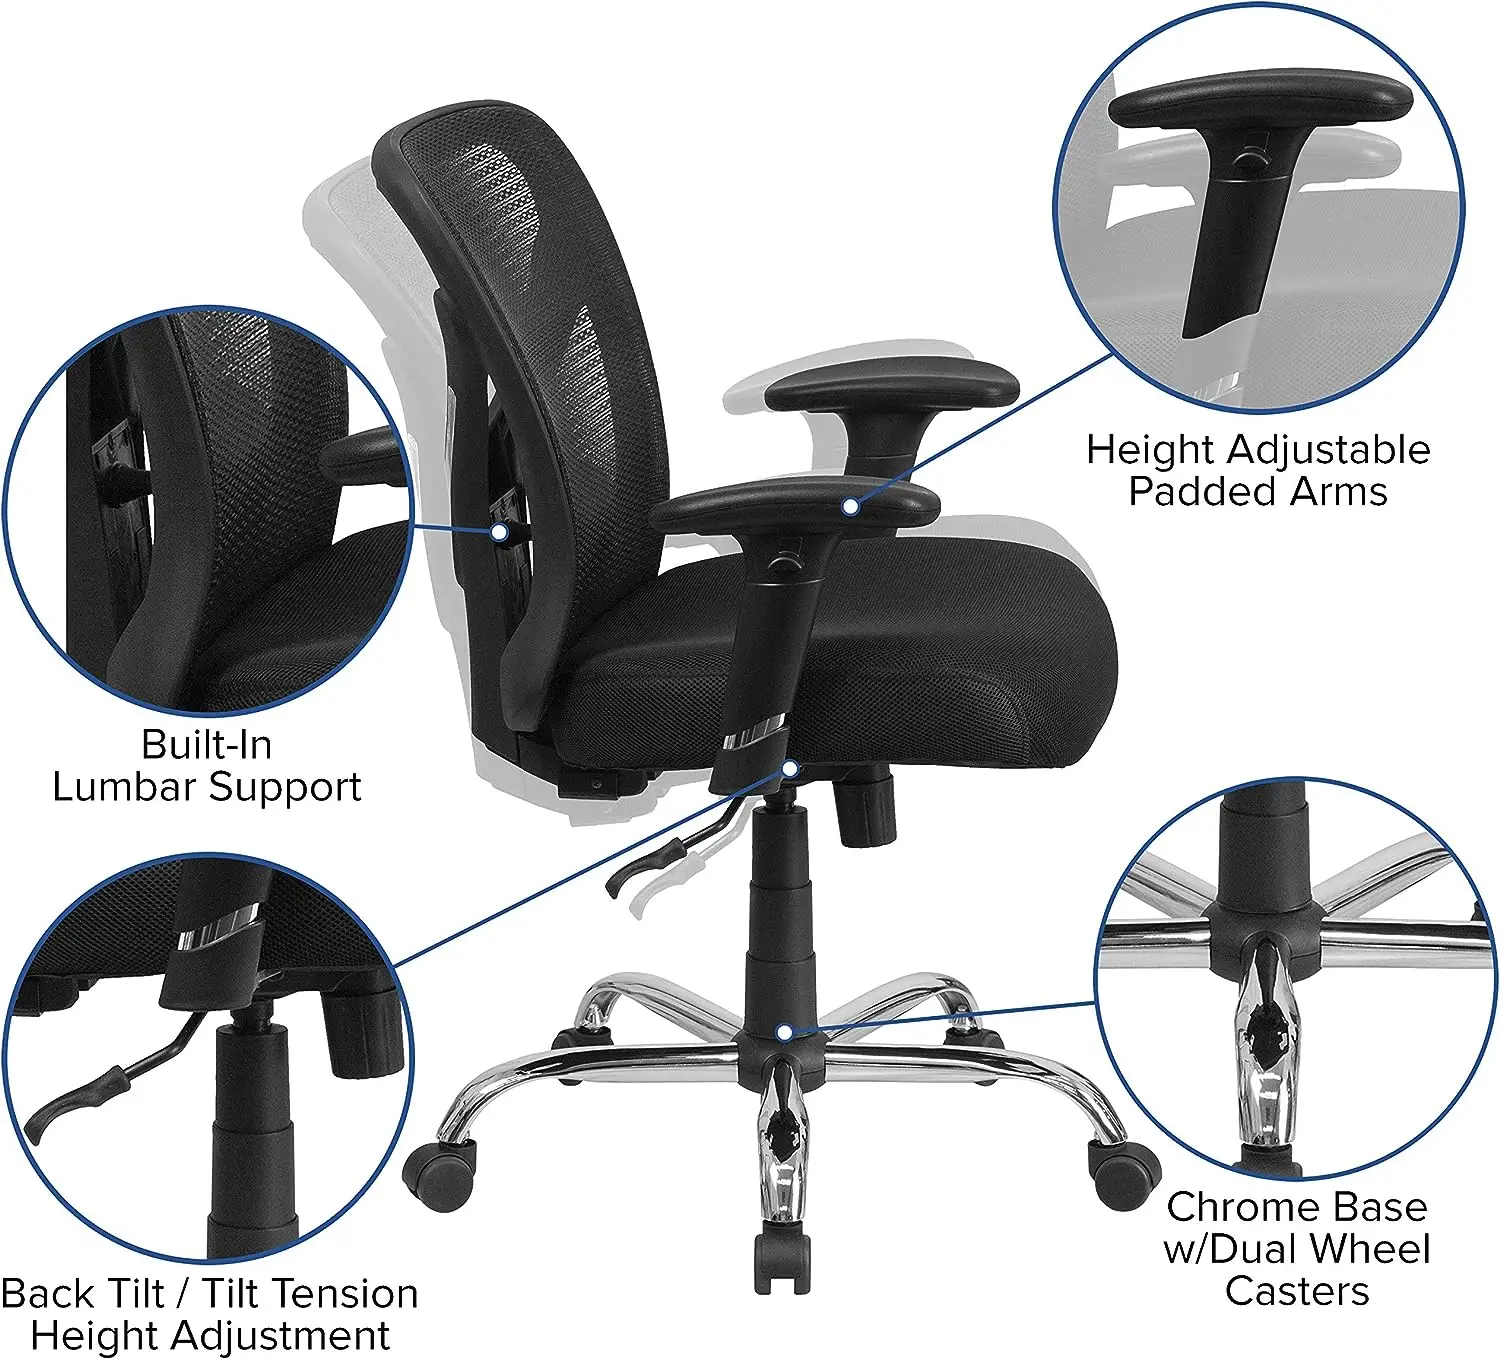 & גבוה הכיסא במשרד | גובה מתכוונן רשת סיבוב כיסא משרדי עם גלגלים - 4